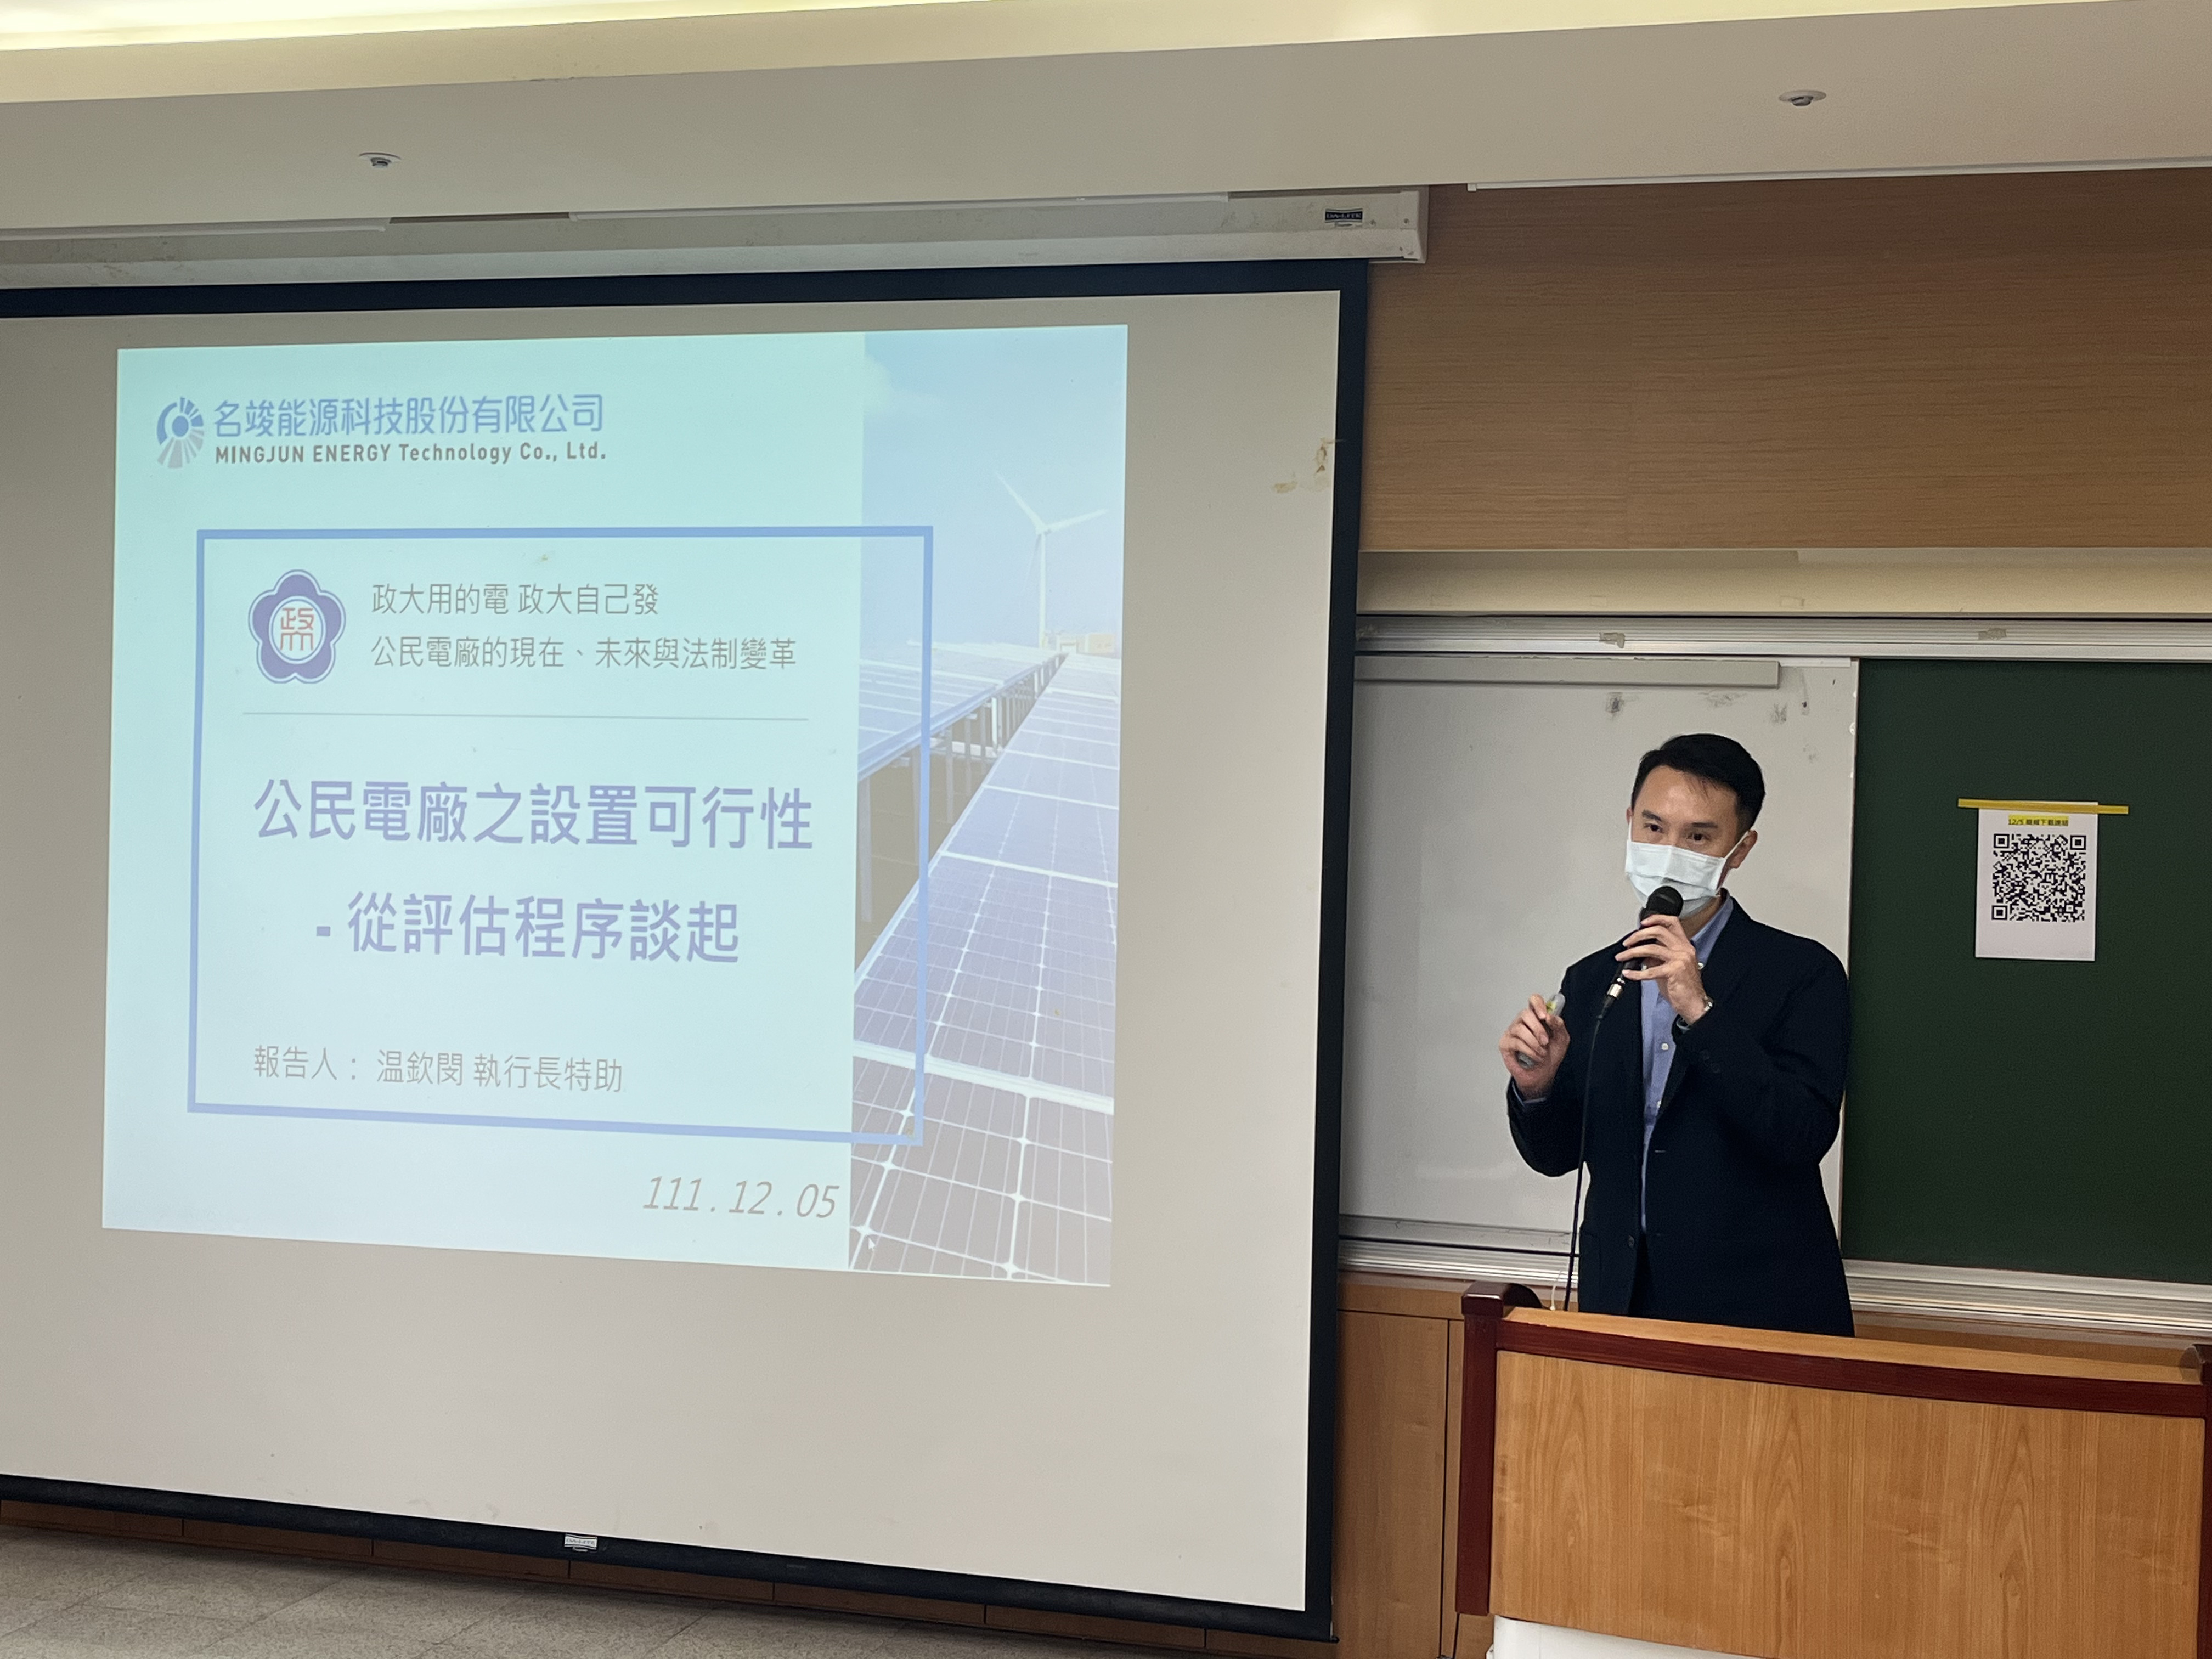 名竣能源科技有限公司溫欽閔執行長特助演講「公民電廠之設置可行性—從評估程序談起」。